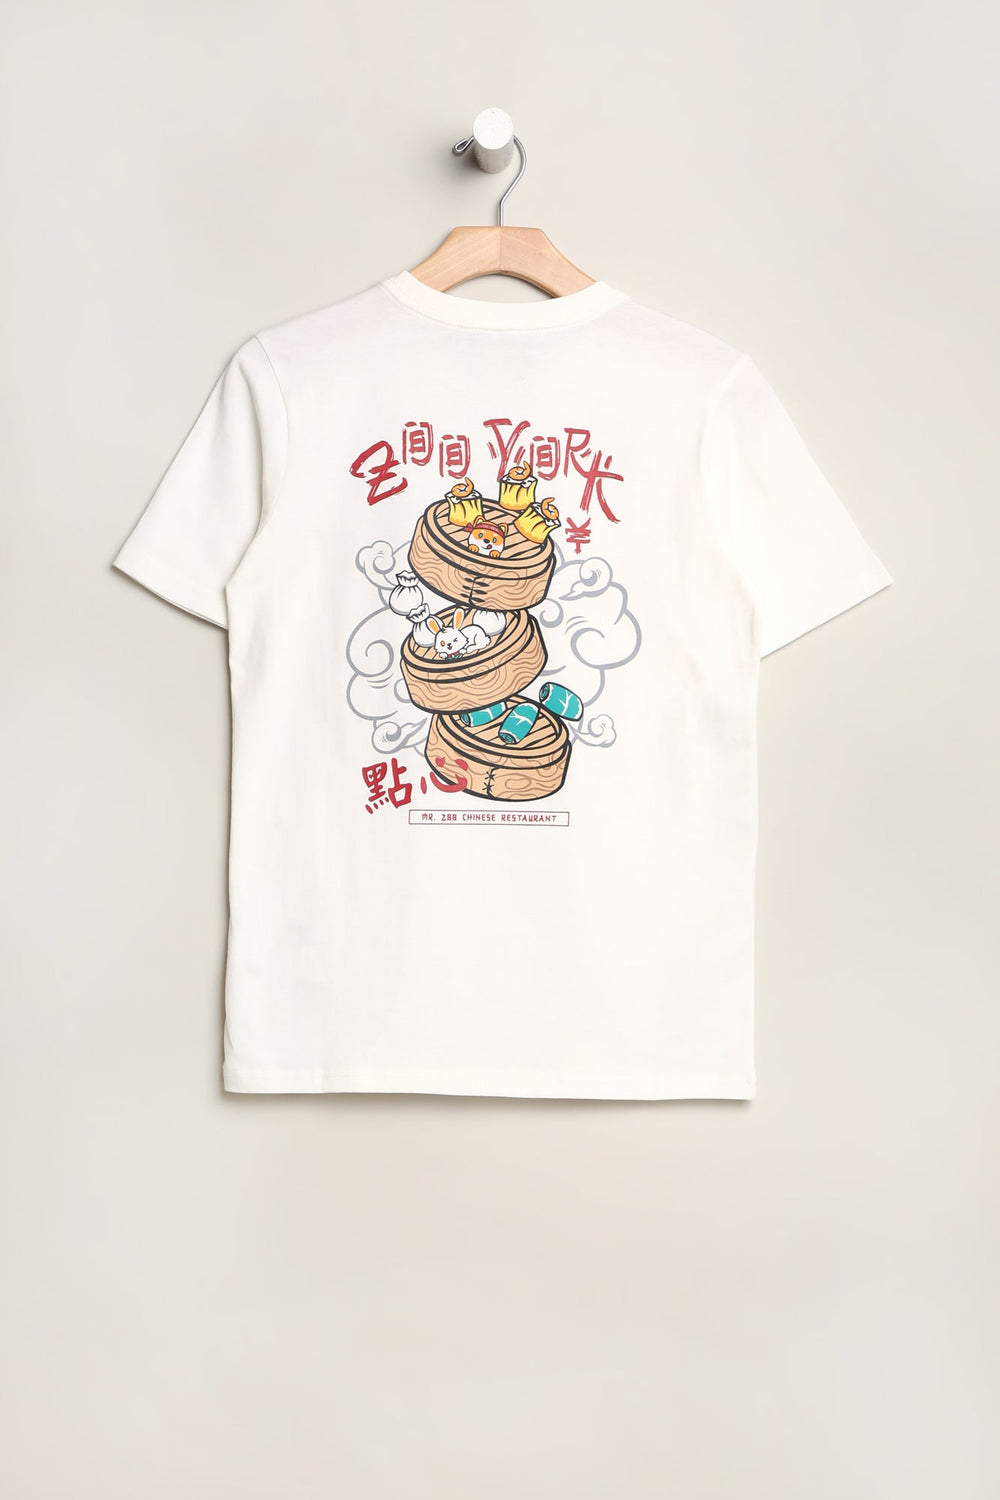 T-Shirt Imprimé Dim Sum Zoo York Junior T-Shirt Imprimé Dim Sum Zoo York Junior